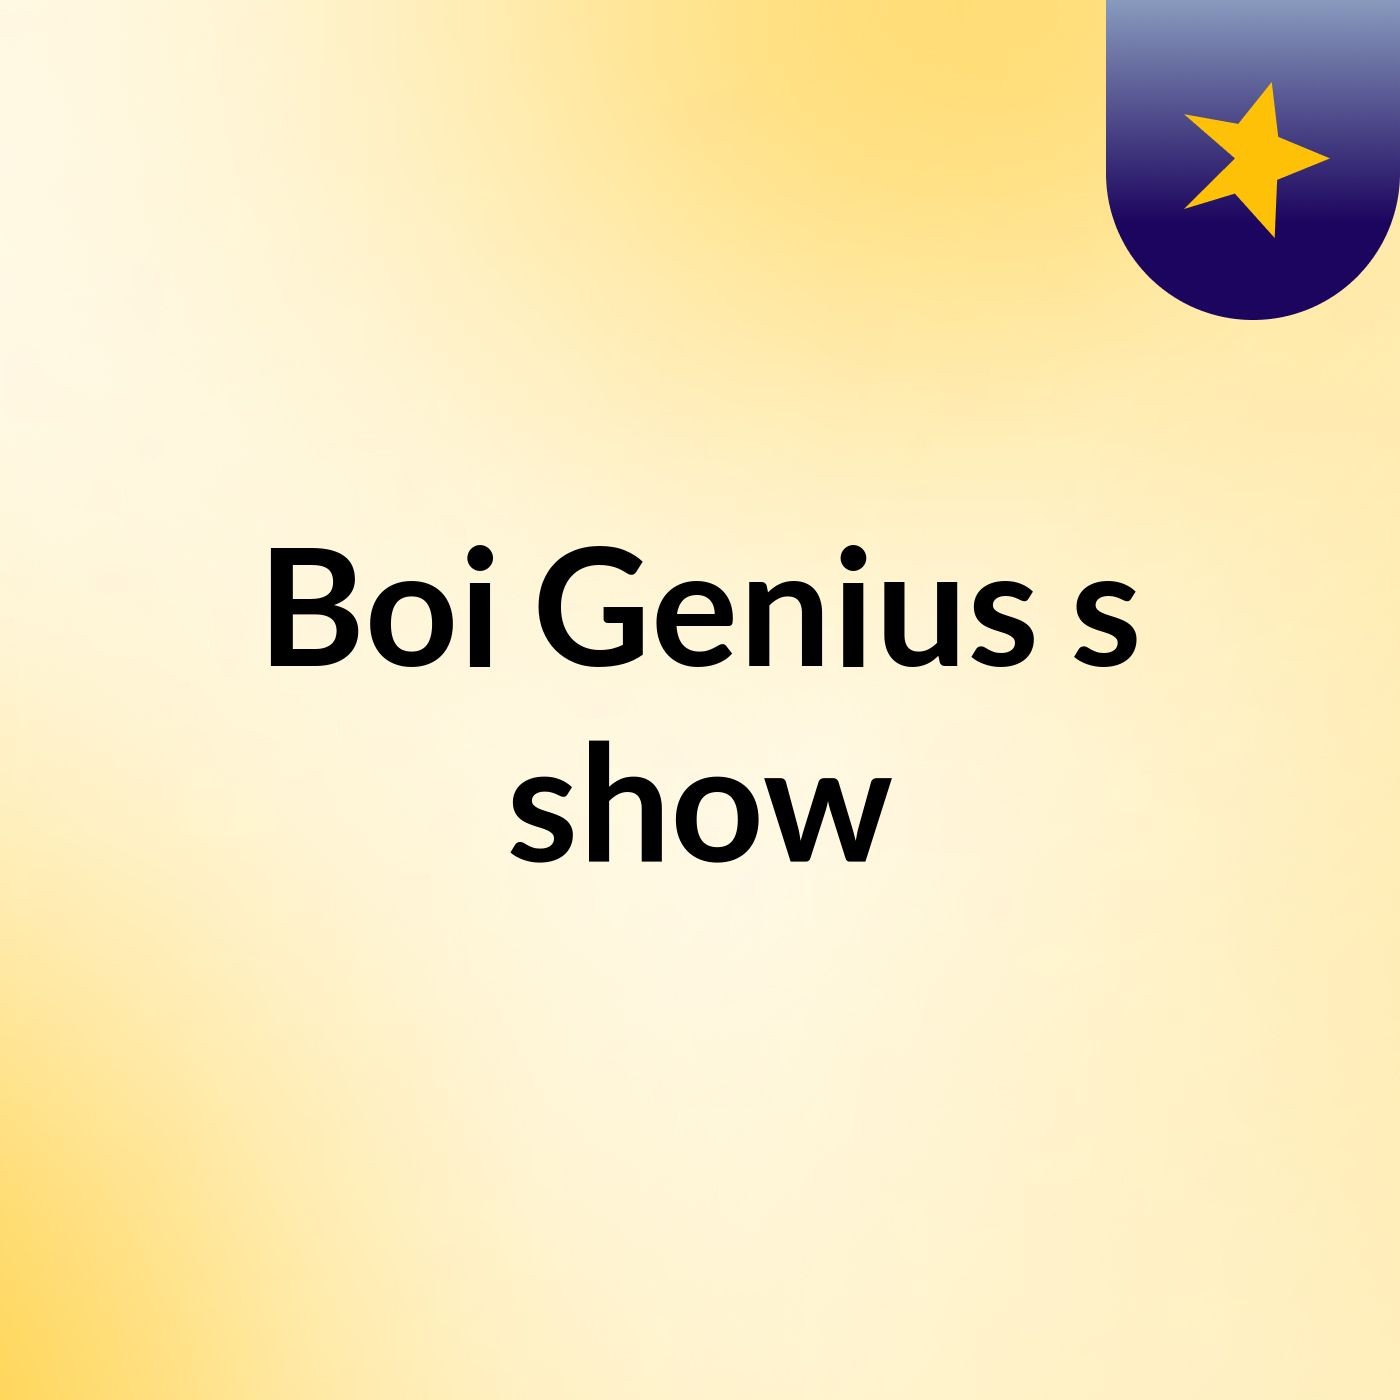 Boi Genius's show